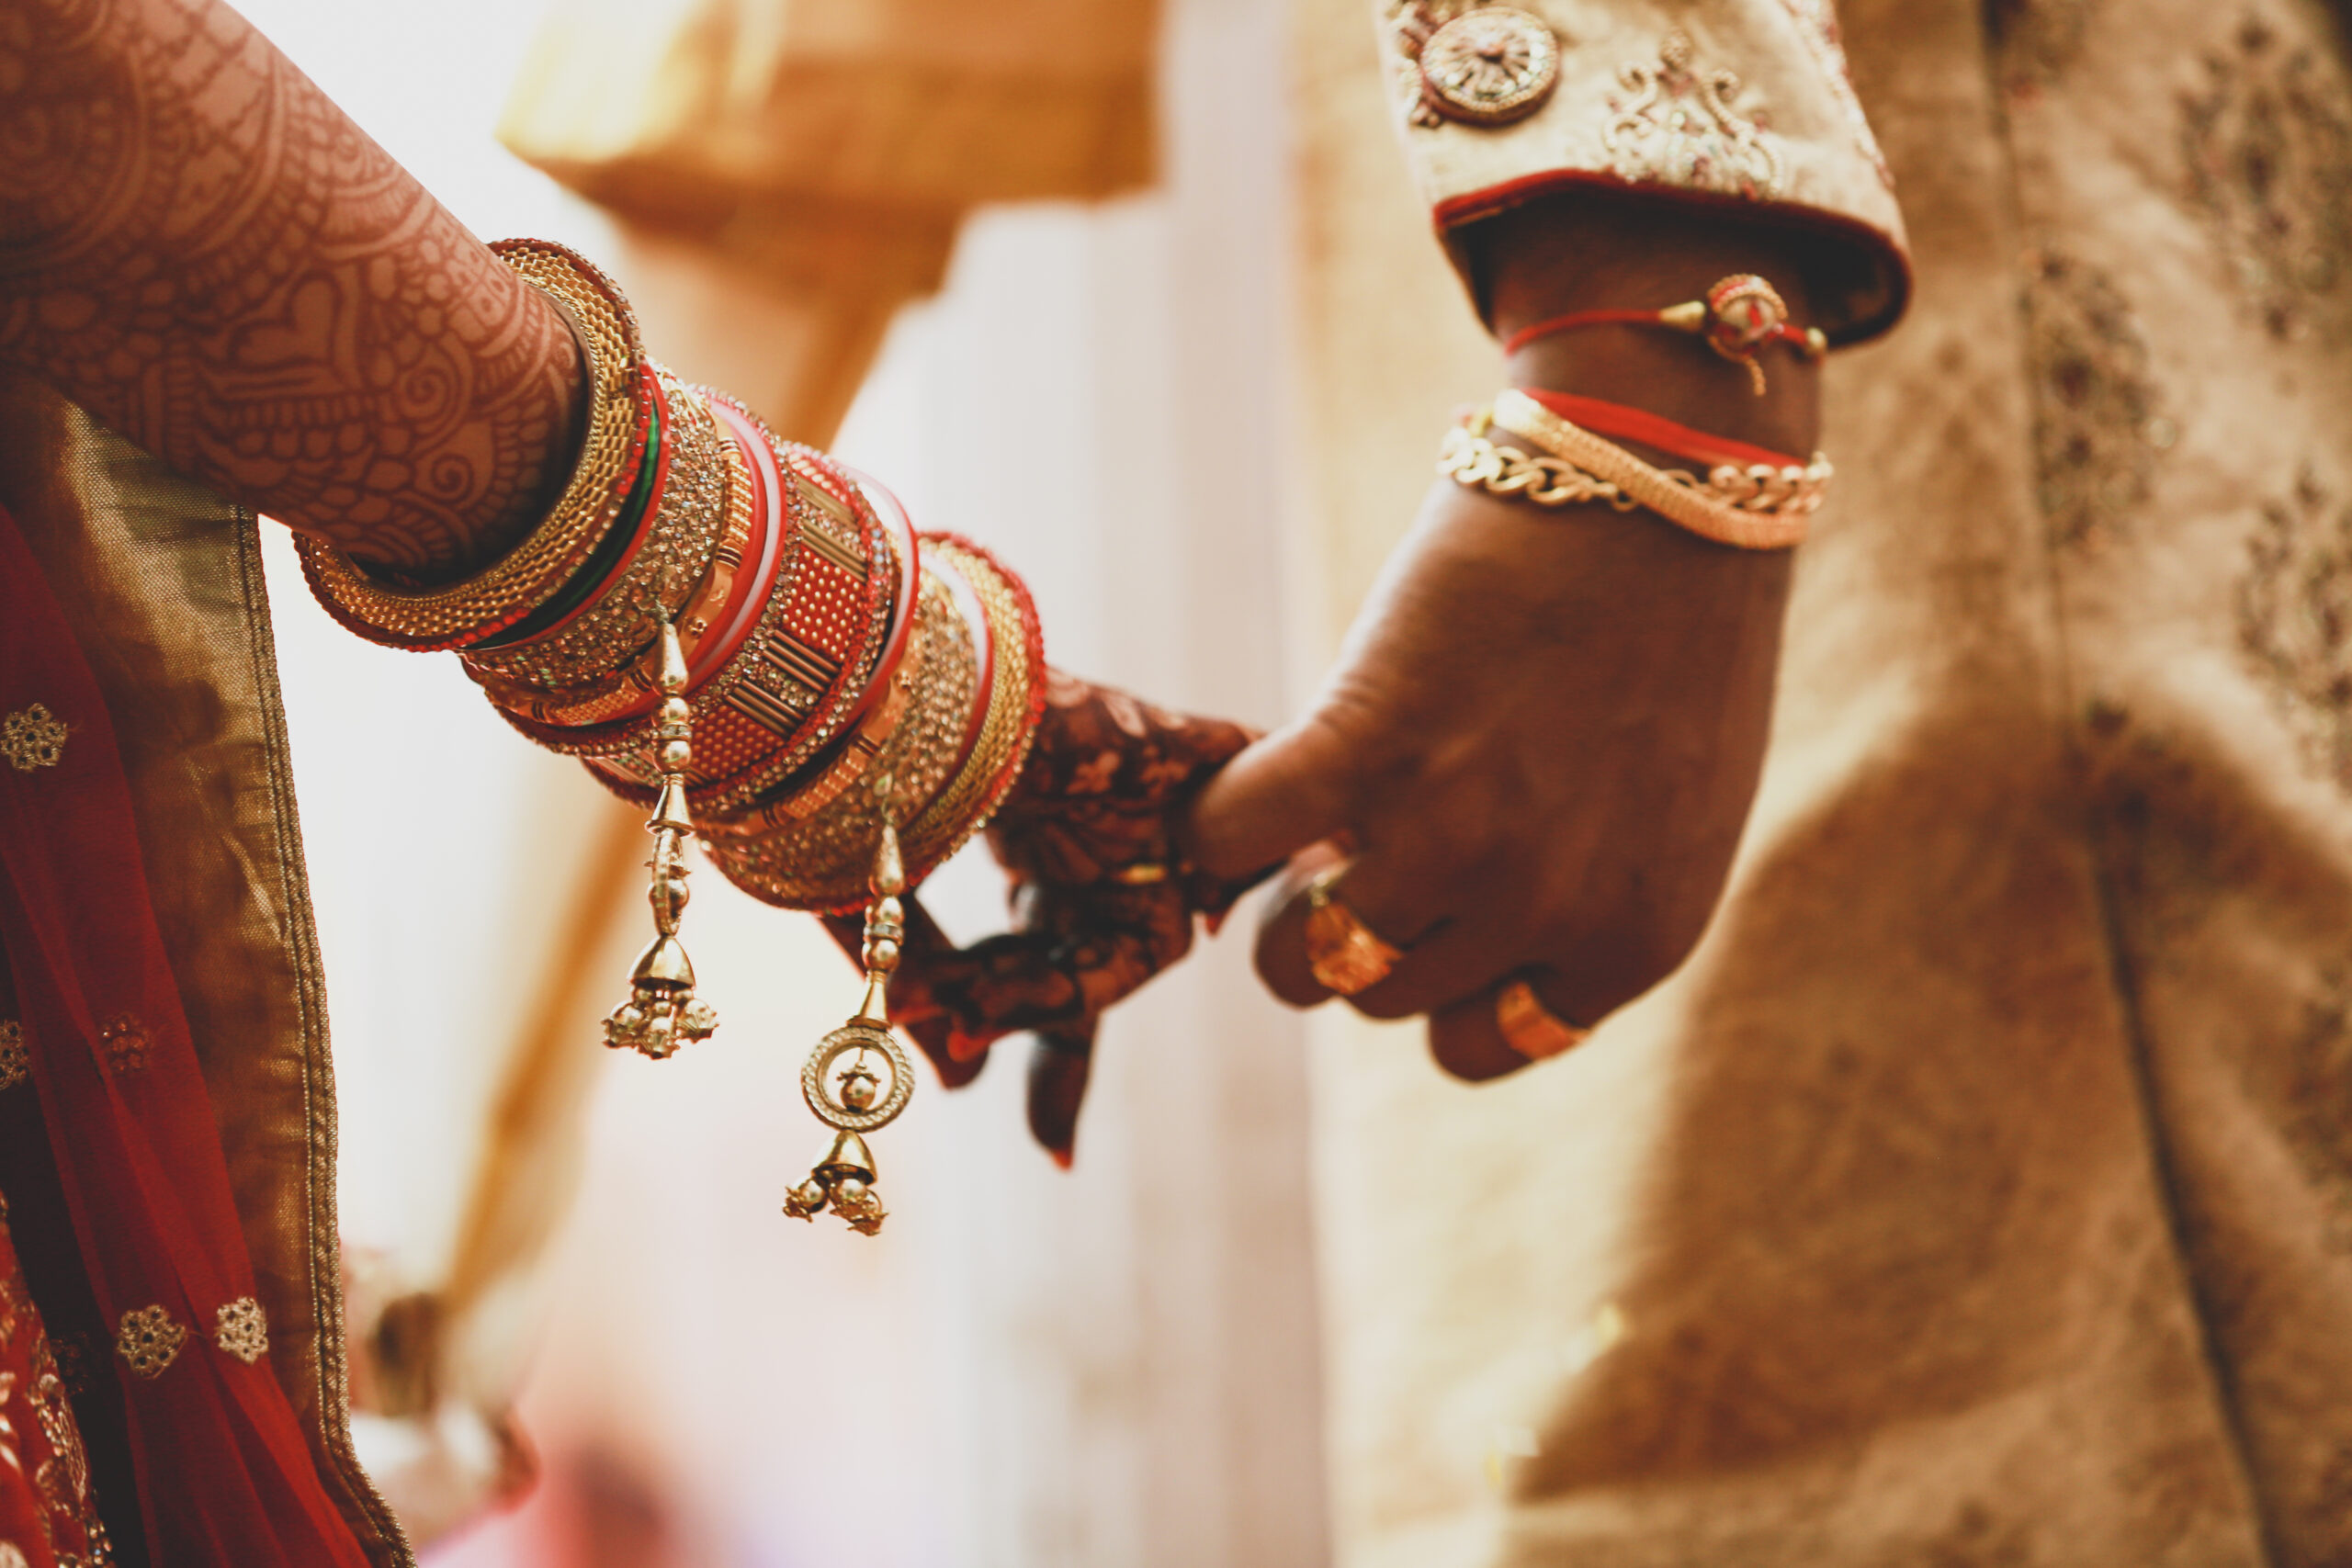 Delhi’s Marriage bureaus with a niche